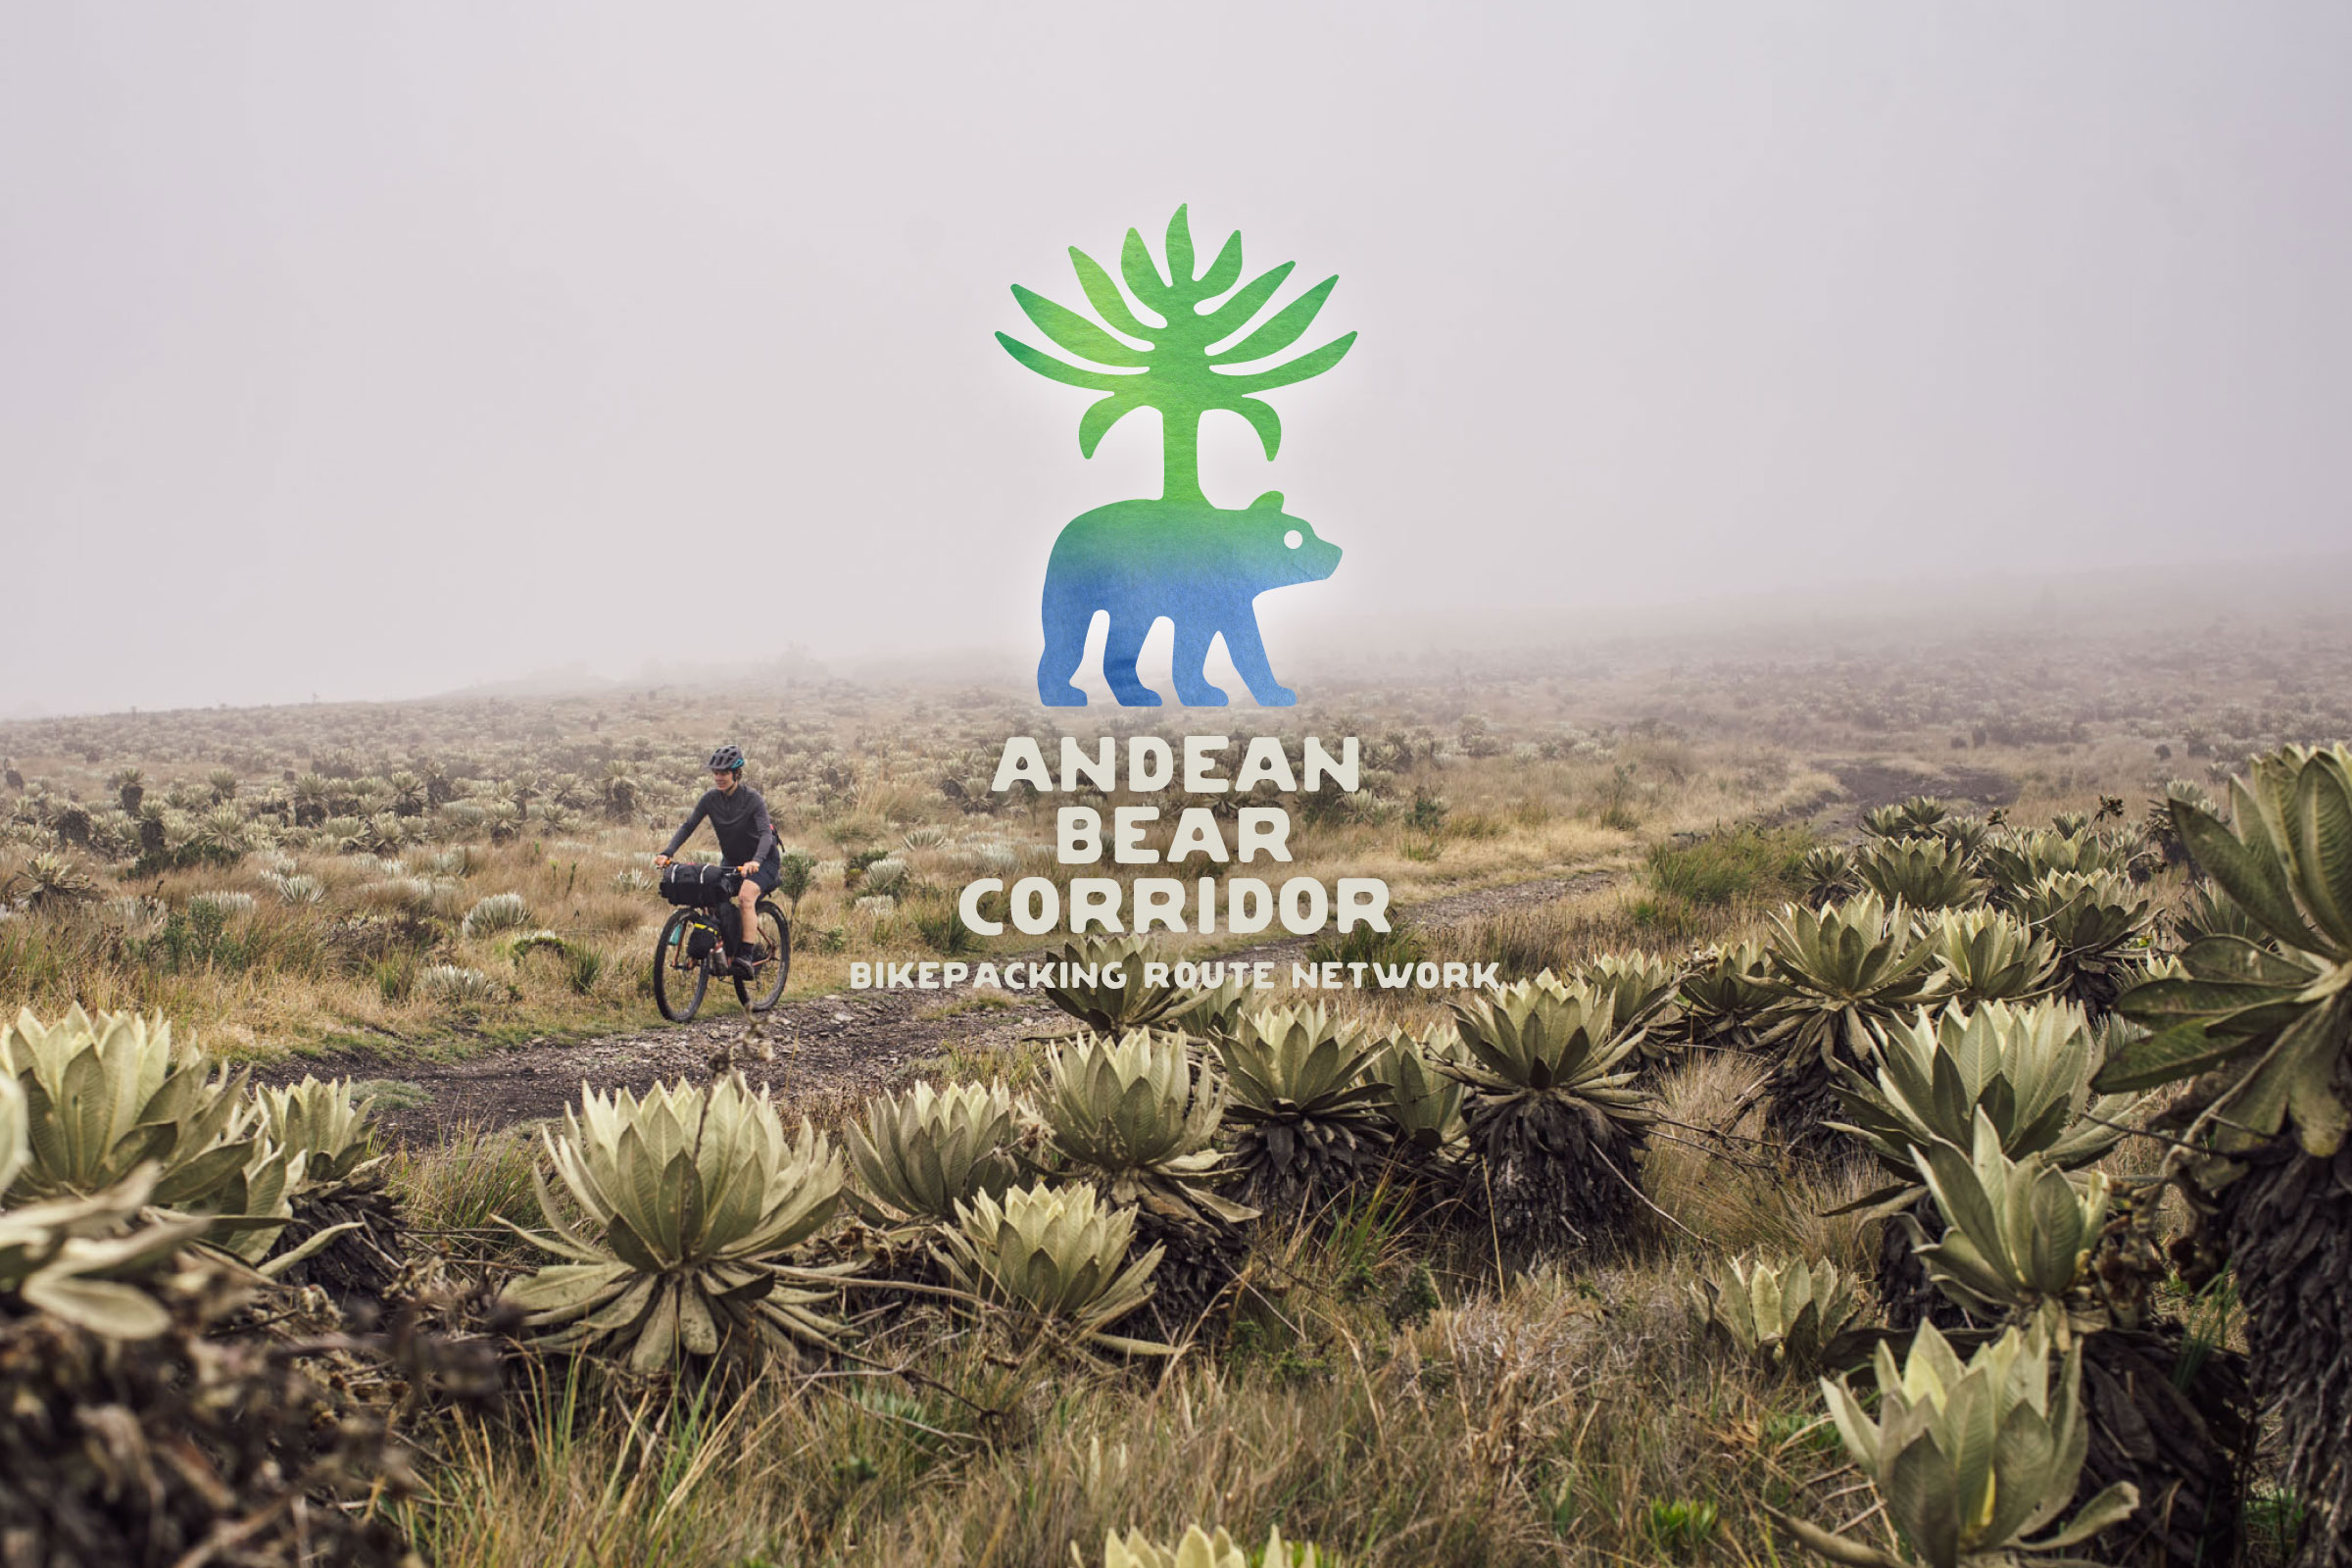 Andean Bear Corridor